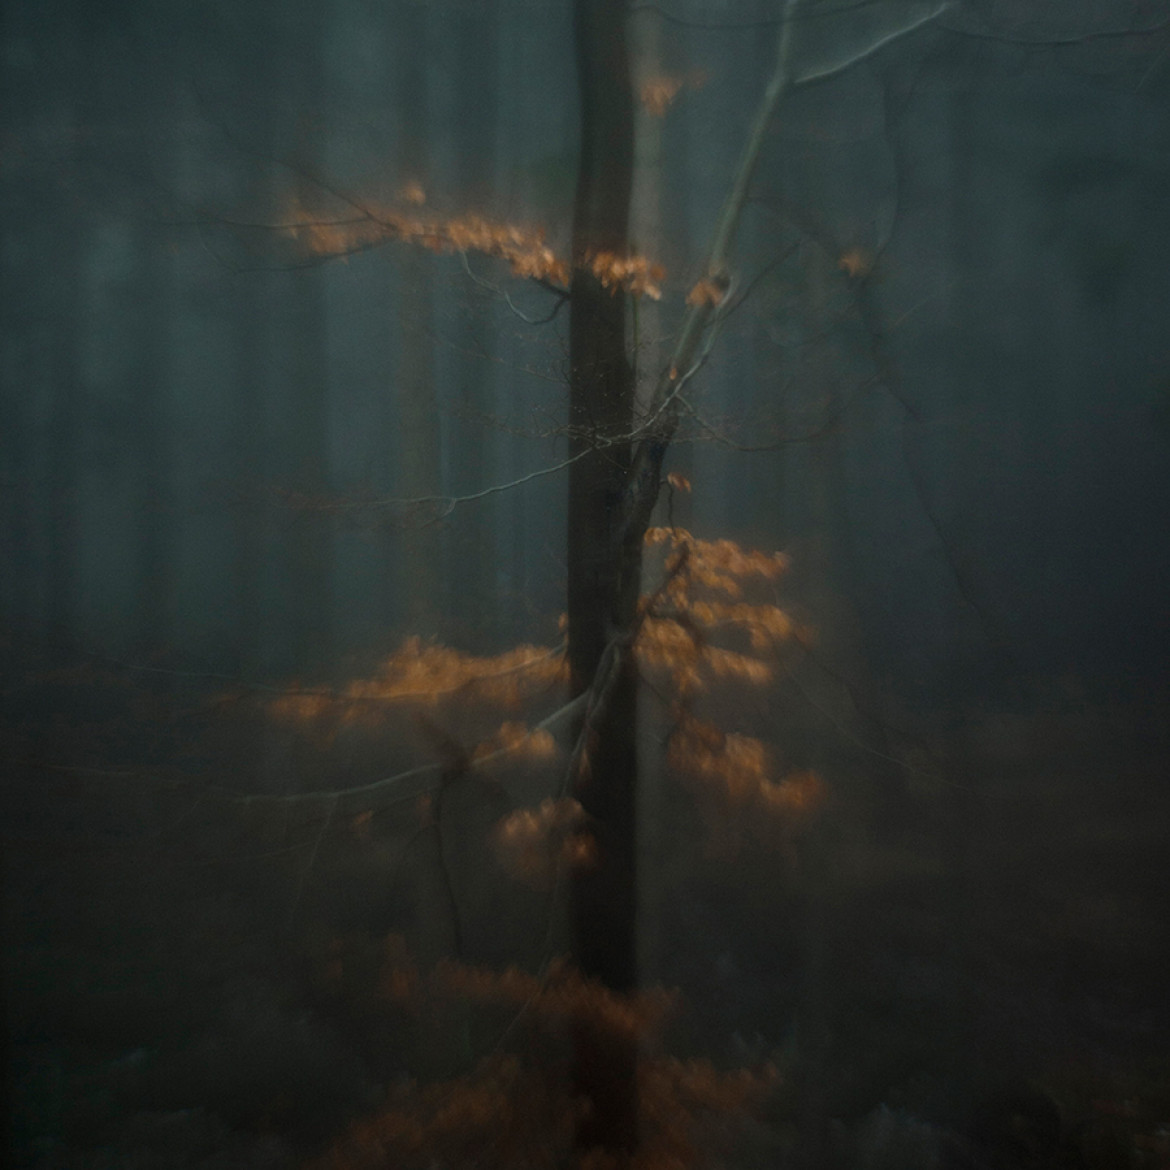 fot. Taida Tarabuła, "Deep Into", 1. miejsce w podkategorii Trees profesjonalnej kategorii Nature.

Seria zdjęć natury mająca obrazować wewnętrzne przeżycia autorki.